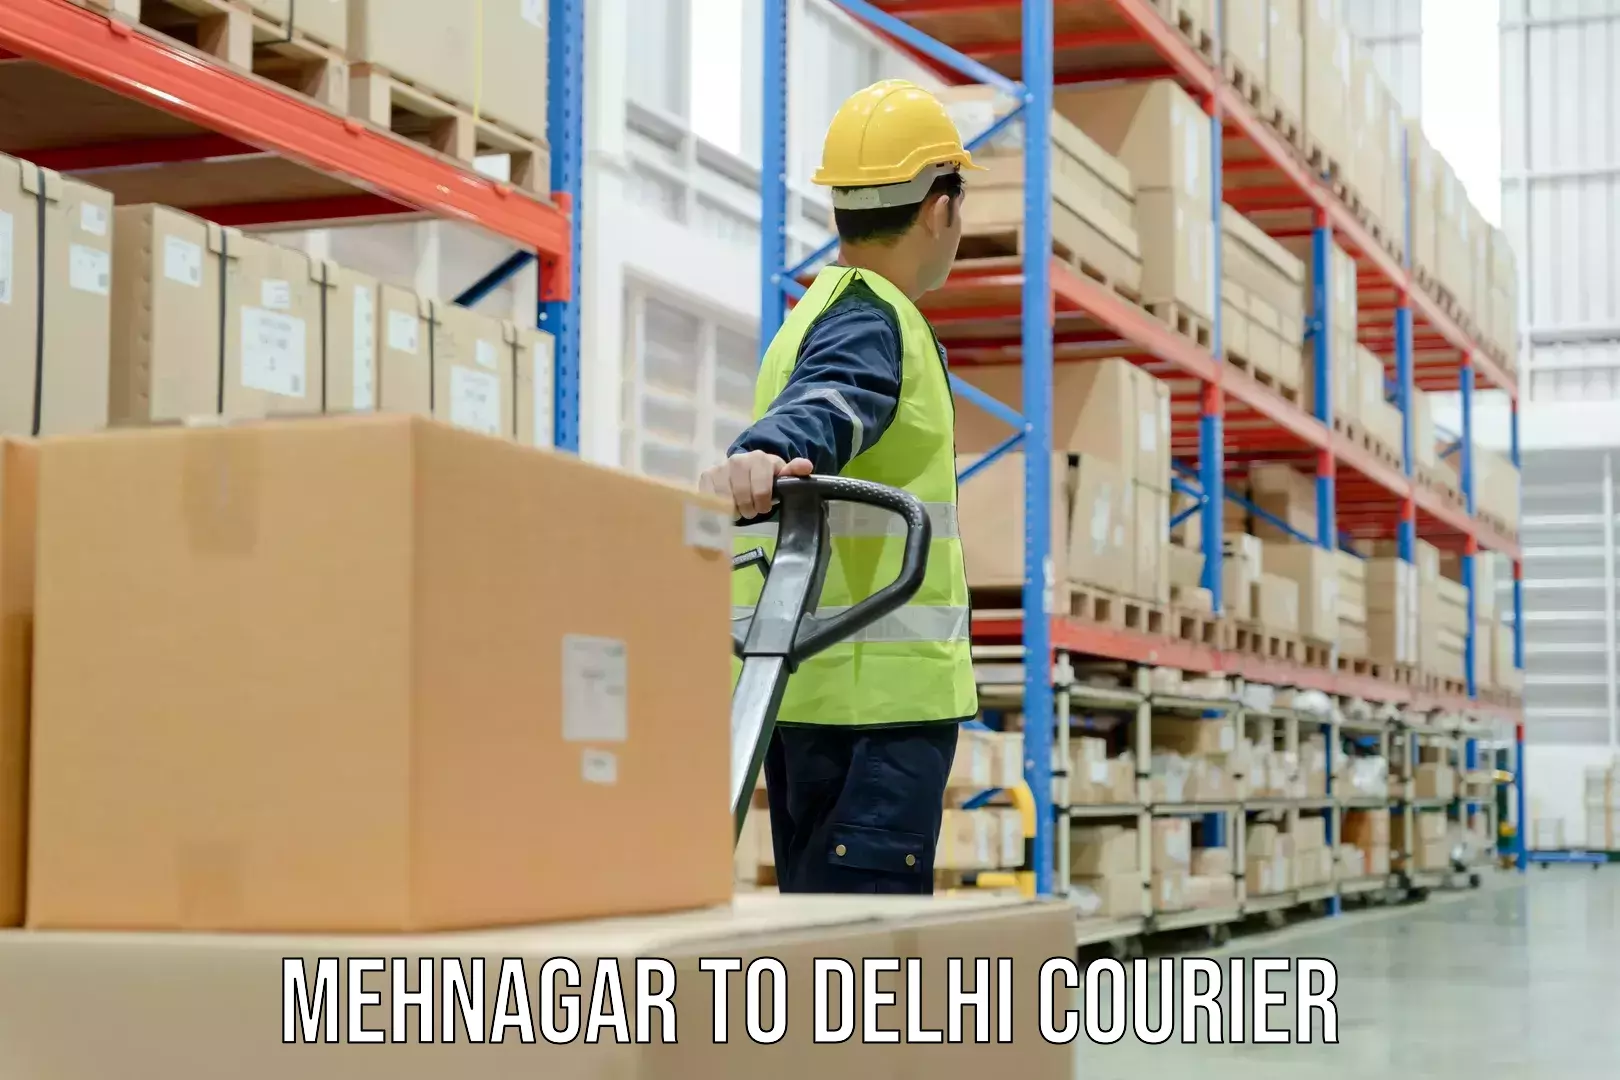 Reliable delivery network Mehnagar to Delhi